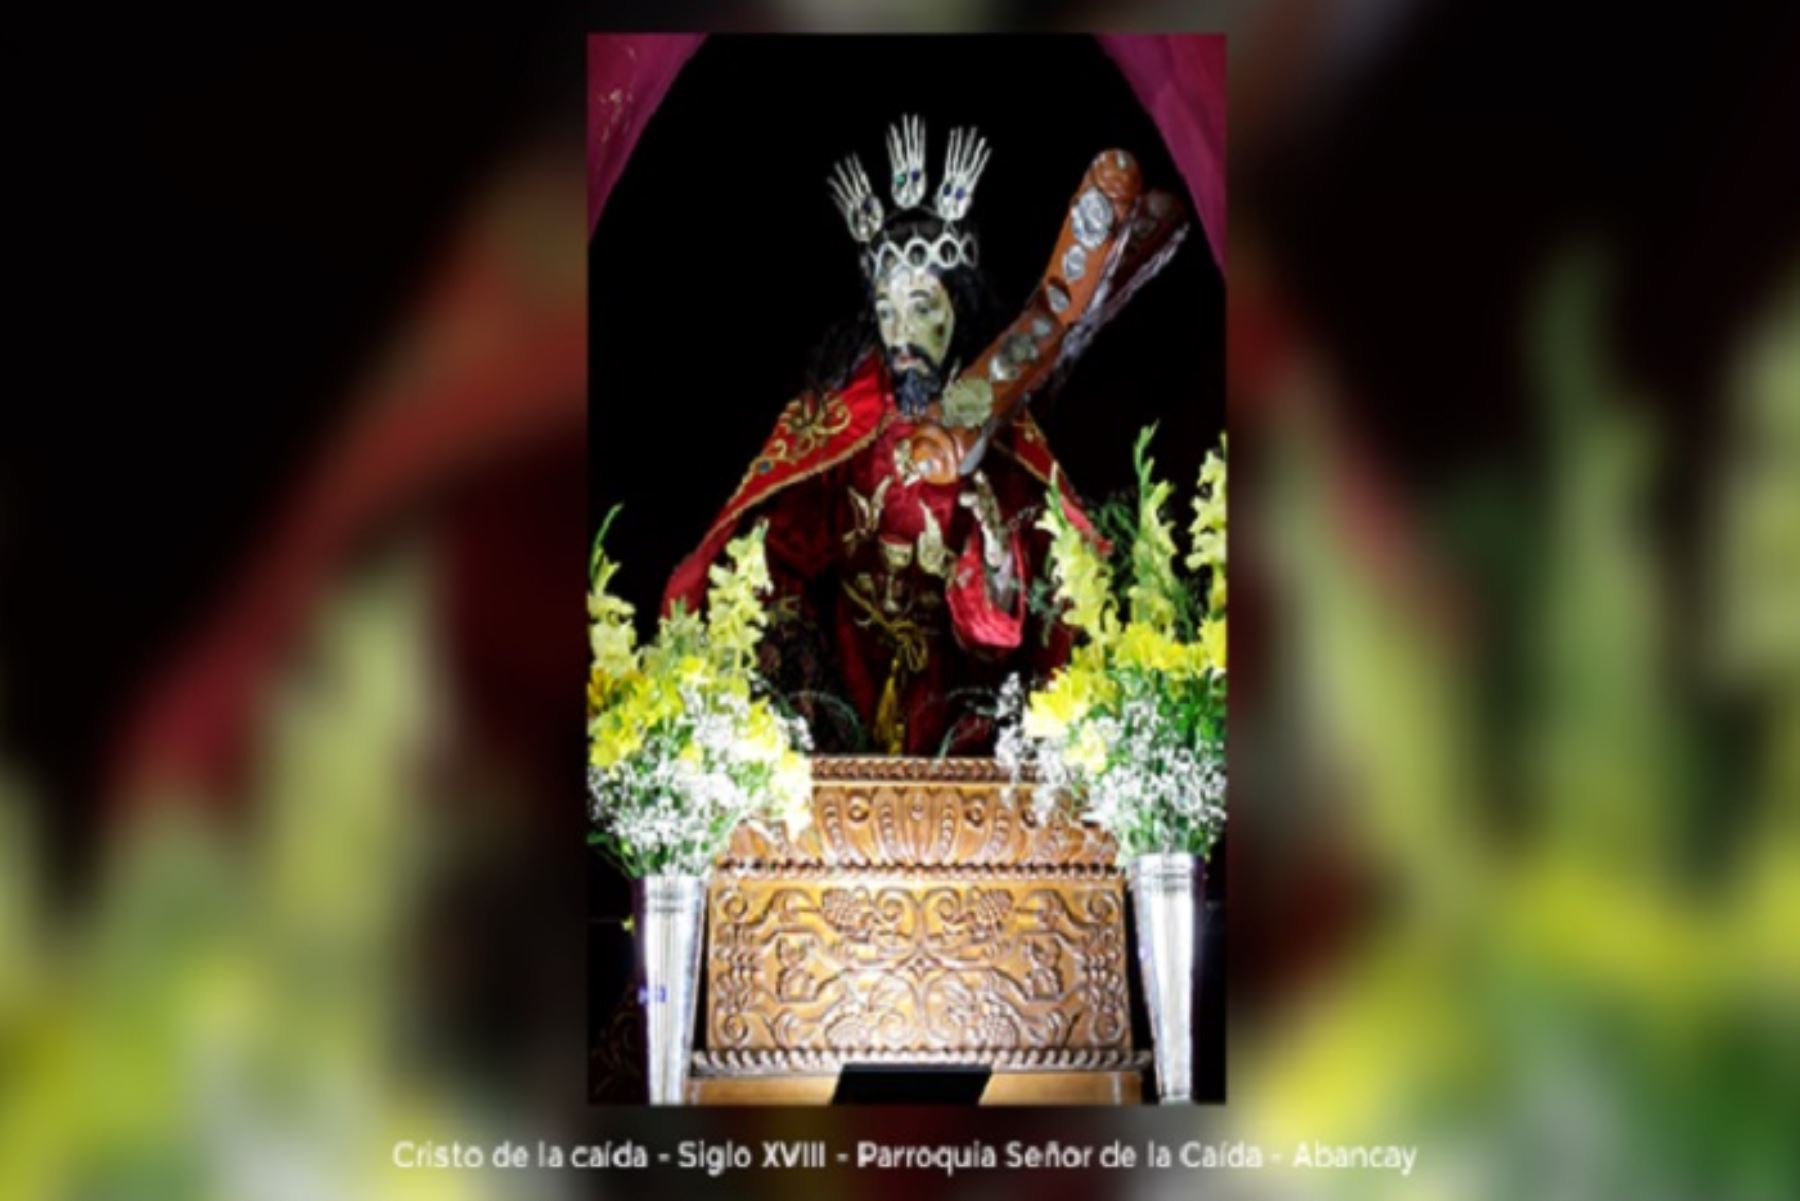 Destaca la imagen del Señor Justo Juez de Illanya, el Cristo de la Caída de Abancay, la Virgen María de Chismapampa y el altar mayor de Colcabamba, entre los principales bienes que serán protegidos por el Estado.